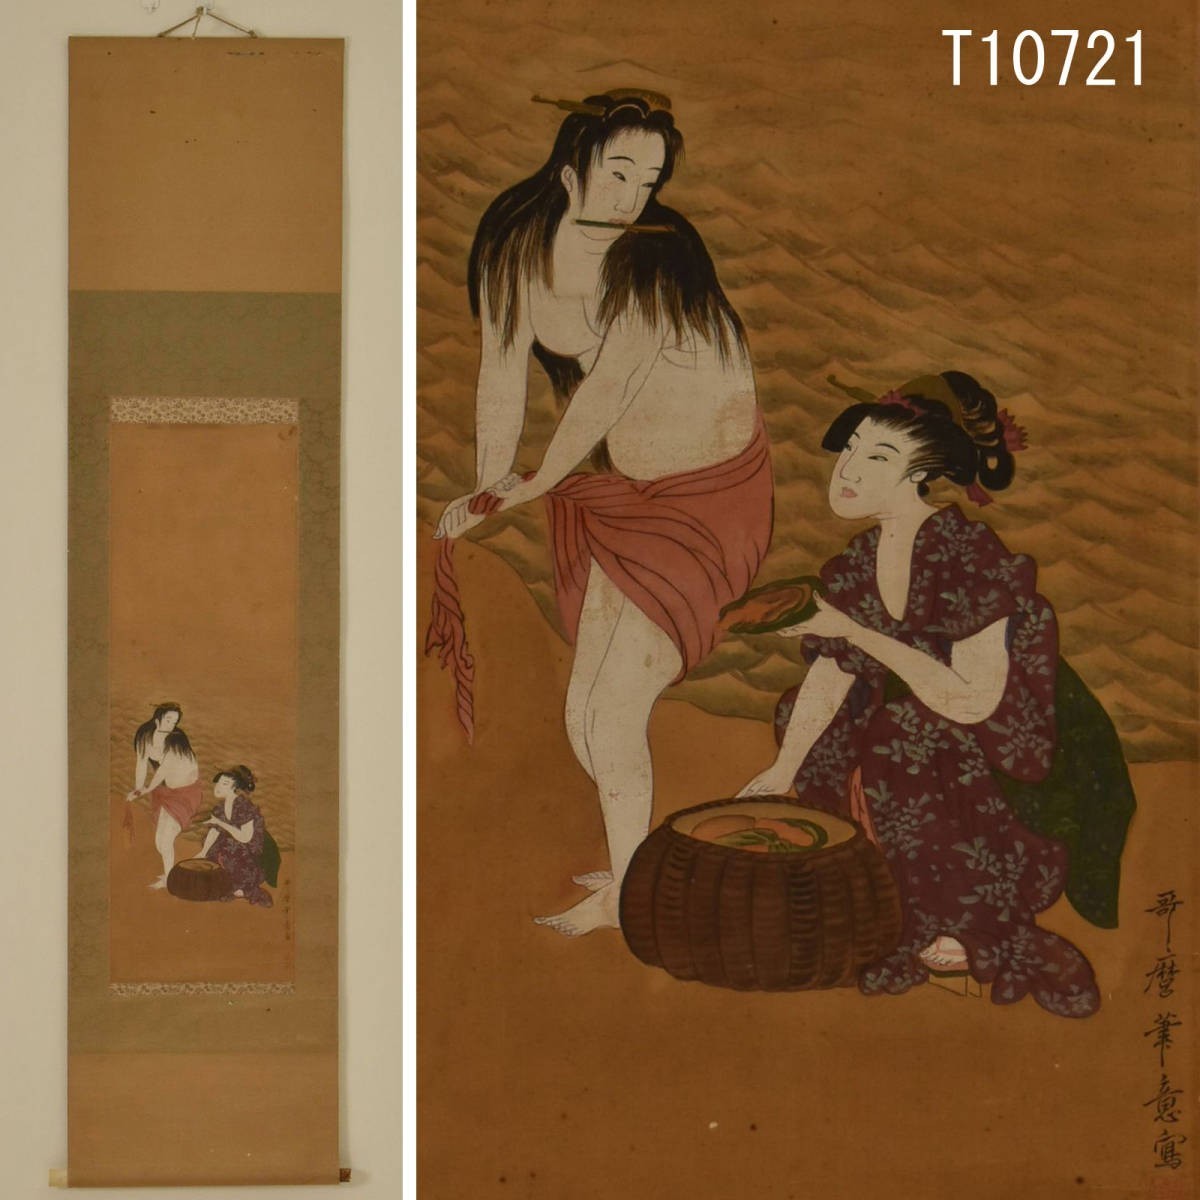 T10721 Utamaro-Kalligraphiegemälde mit schönen Frauen-Hängerolle: authentisches Werk, Malerei, Japanische Malerei, Person, Bodhisattva